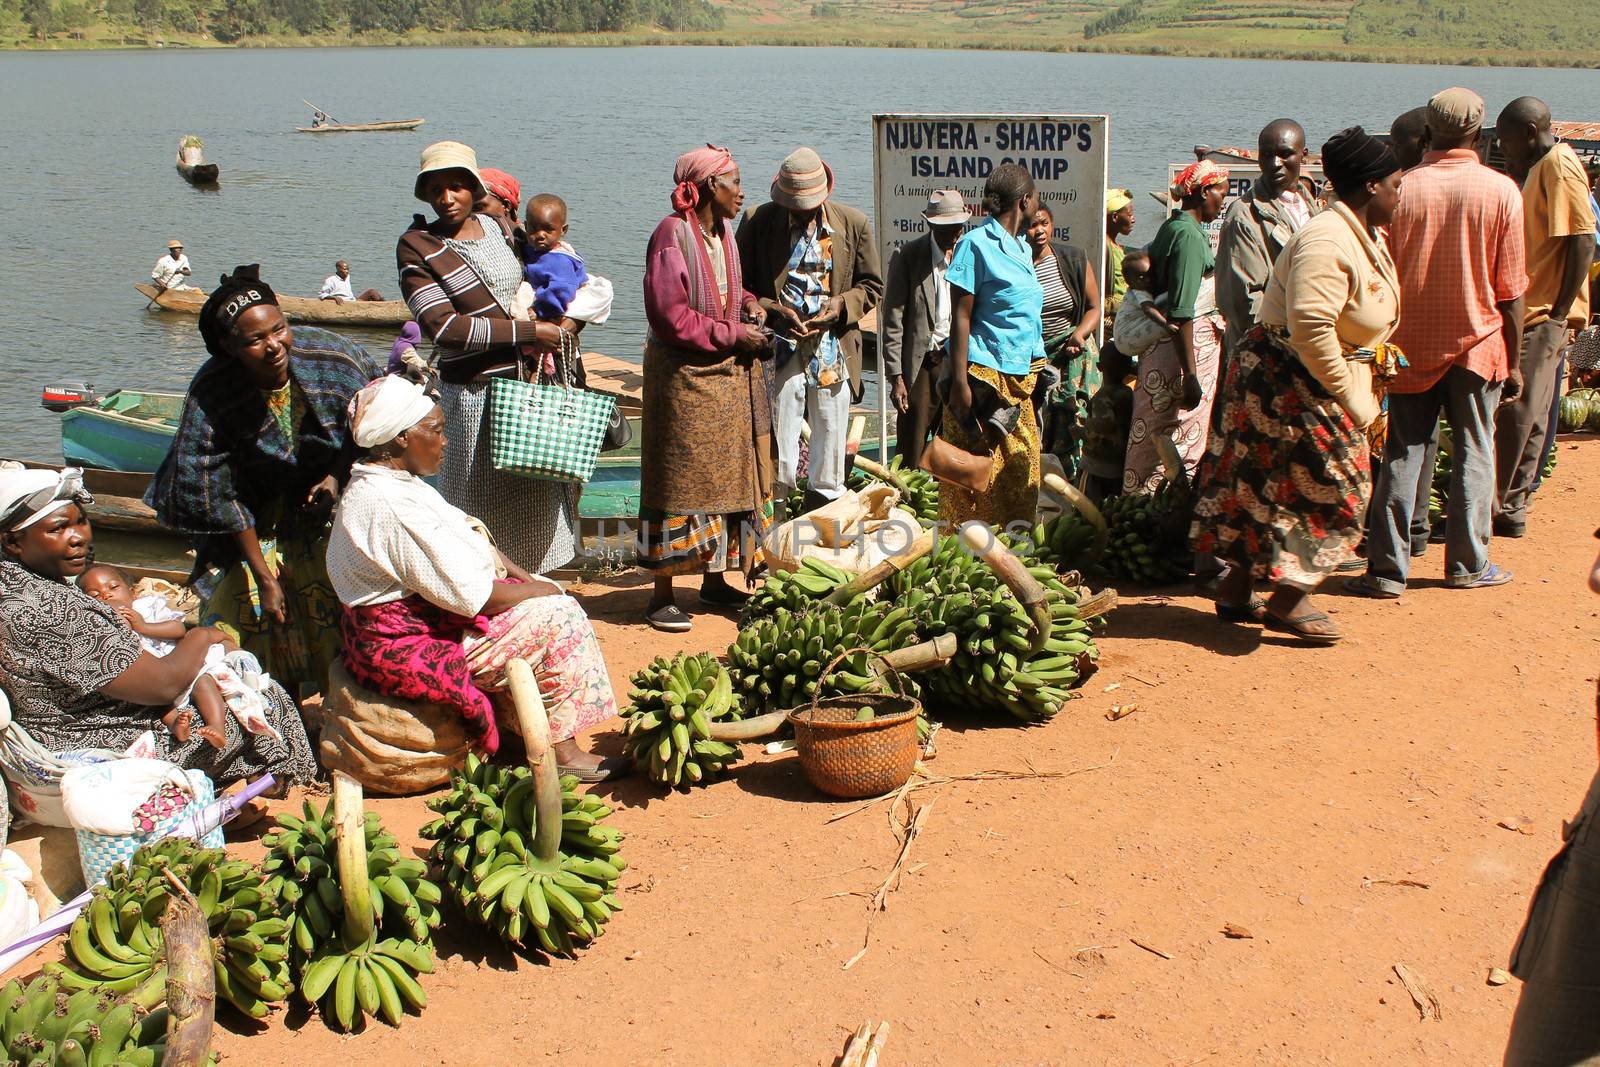 Uganda, lake Bunyonyi - 9 March: African women selling bananas in the market on lake Bunyonyi 9 March 2012 in Uganda.